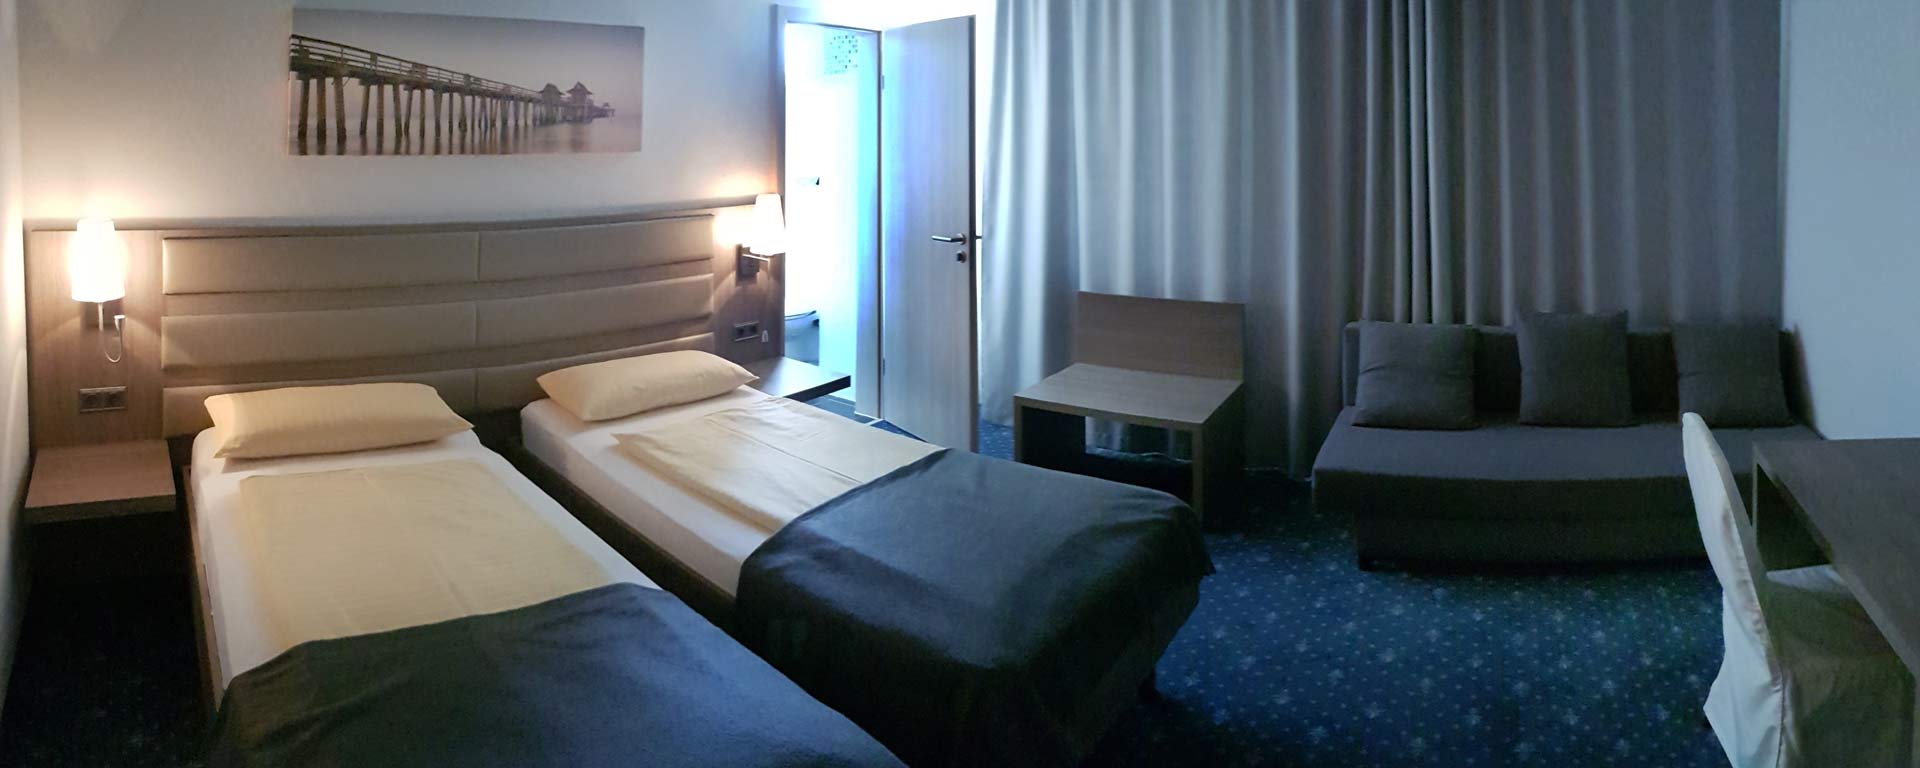 Preiswerte Hotel-Zimmer und Übernachtung in 86551 Aichach bei Dasing/ Augsburg